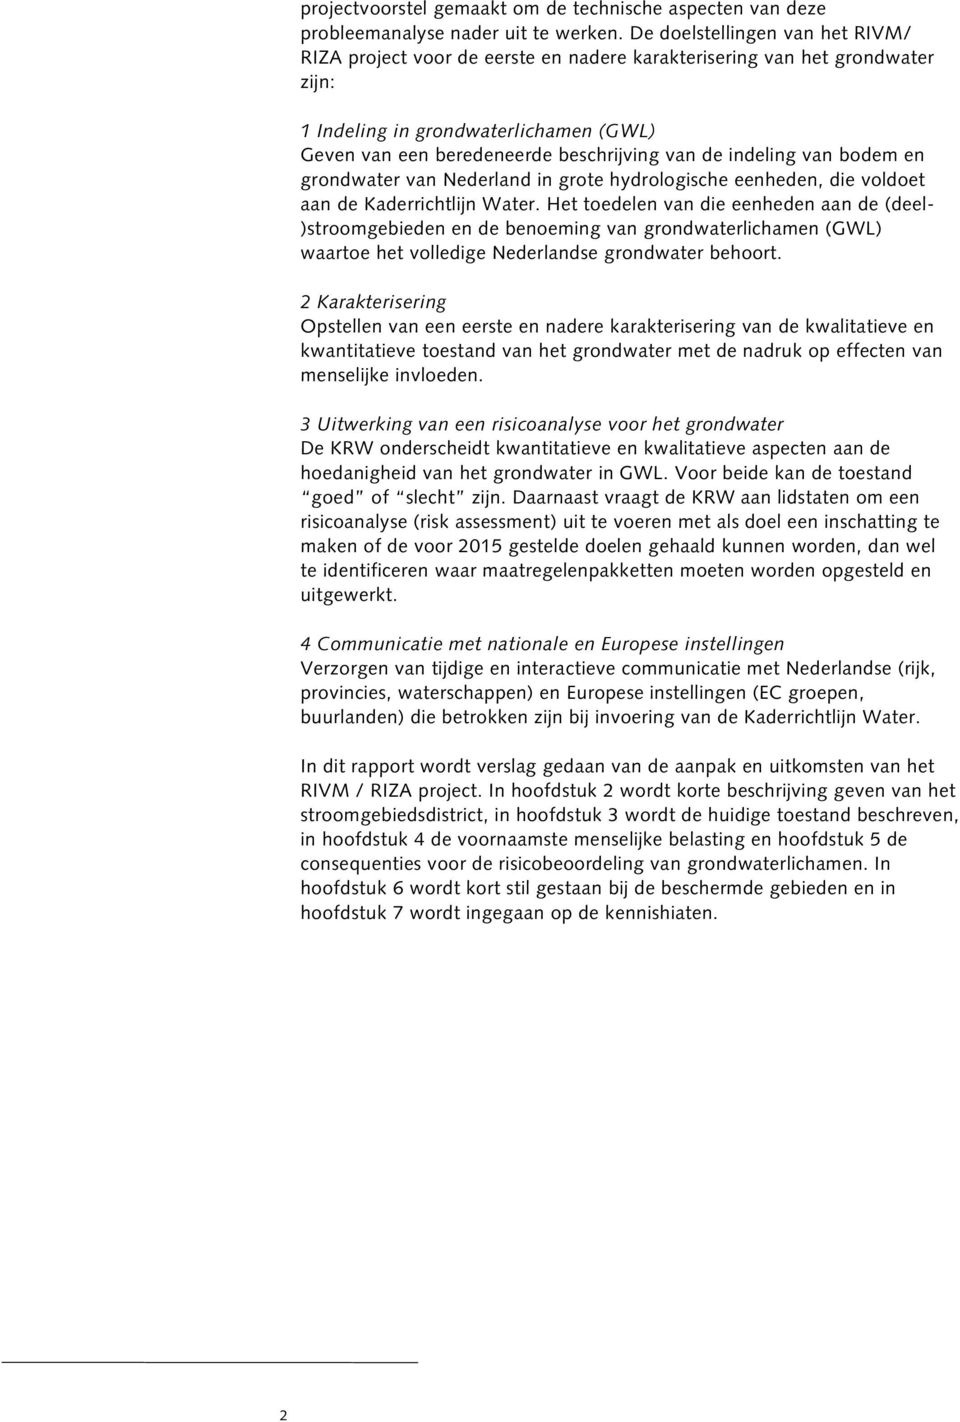 indeling van bodem en grondwater van Nederland in grote hydrologische eenheden, die voldoet aan de Kaderrichtlijn Water.